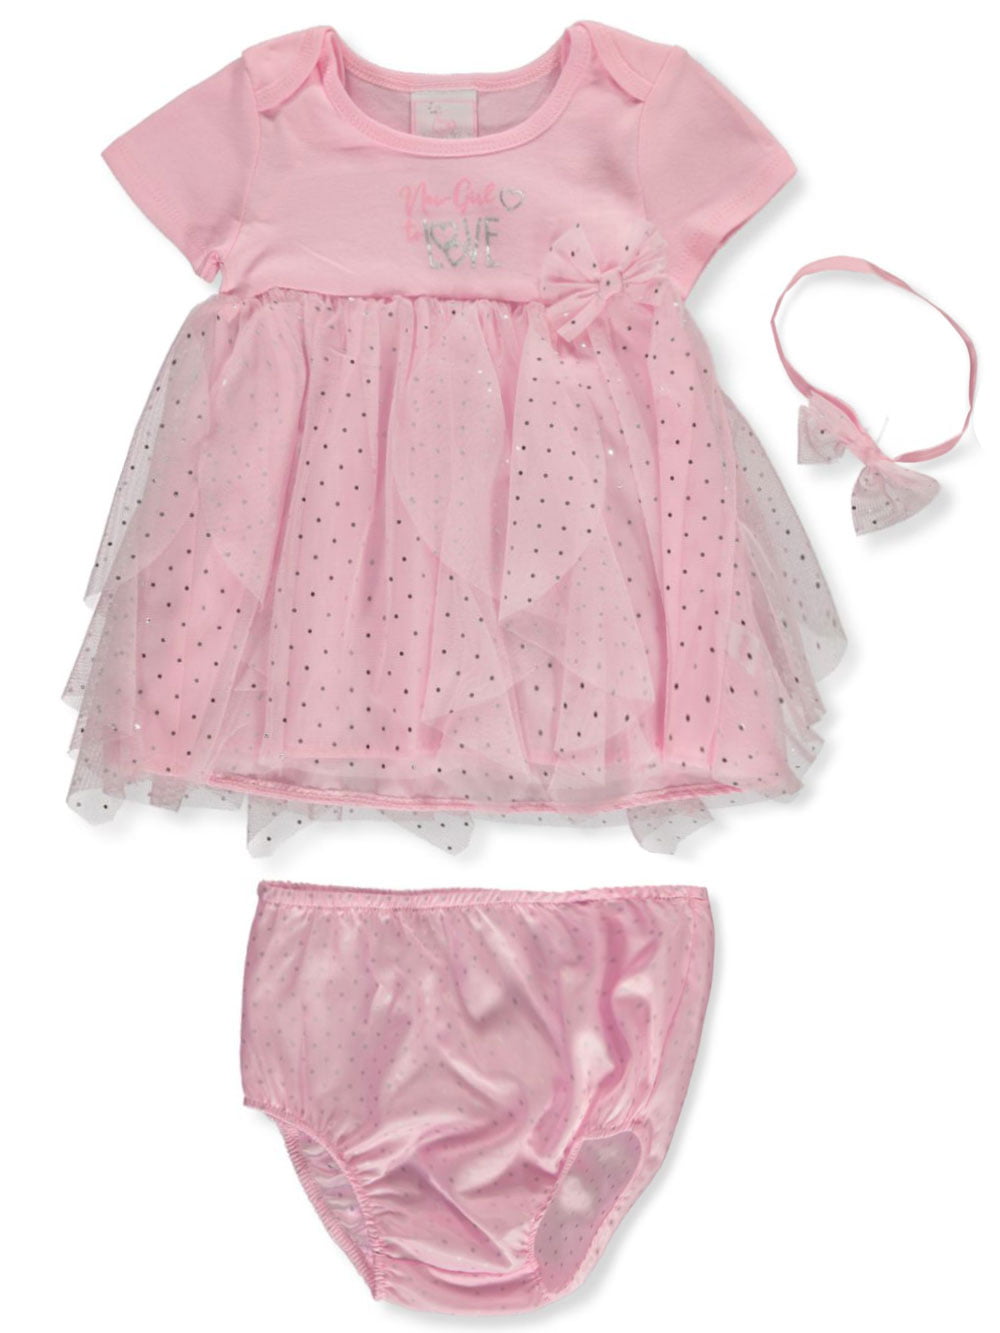 SGS International Sweet & Soft Baby Girls Butterfly 2-Piece Dress Set